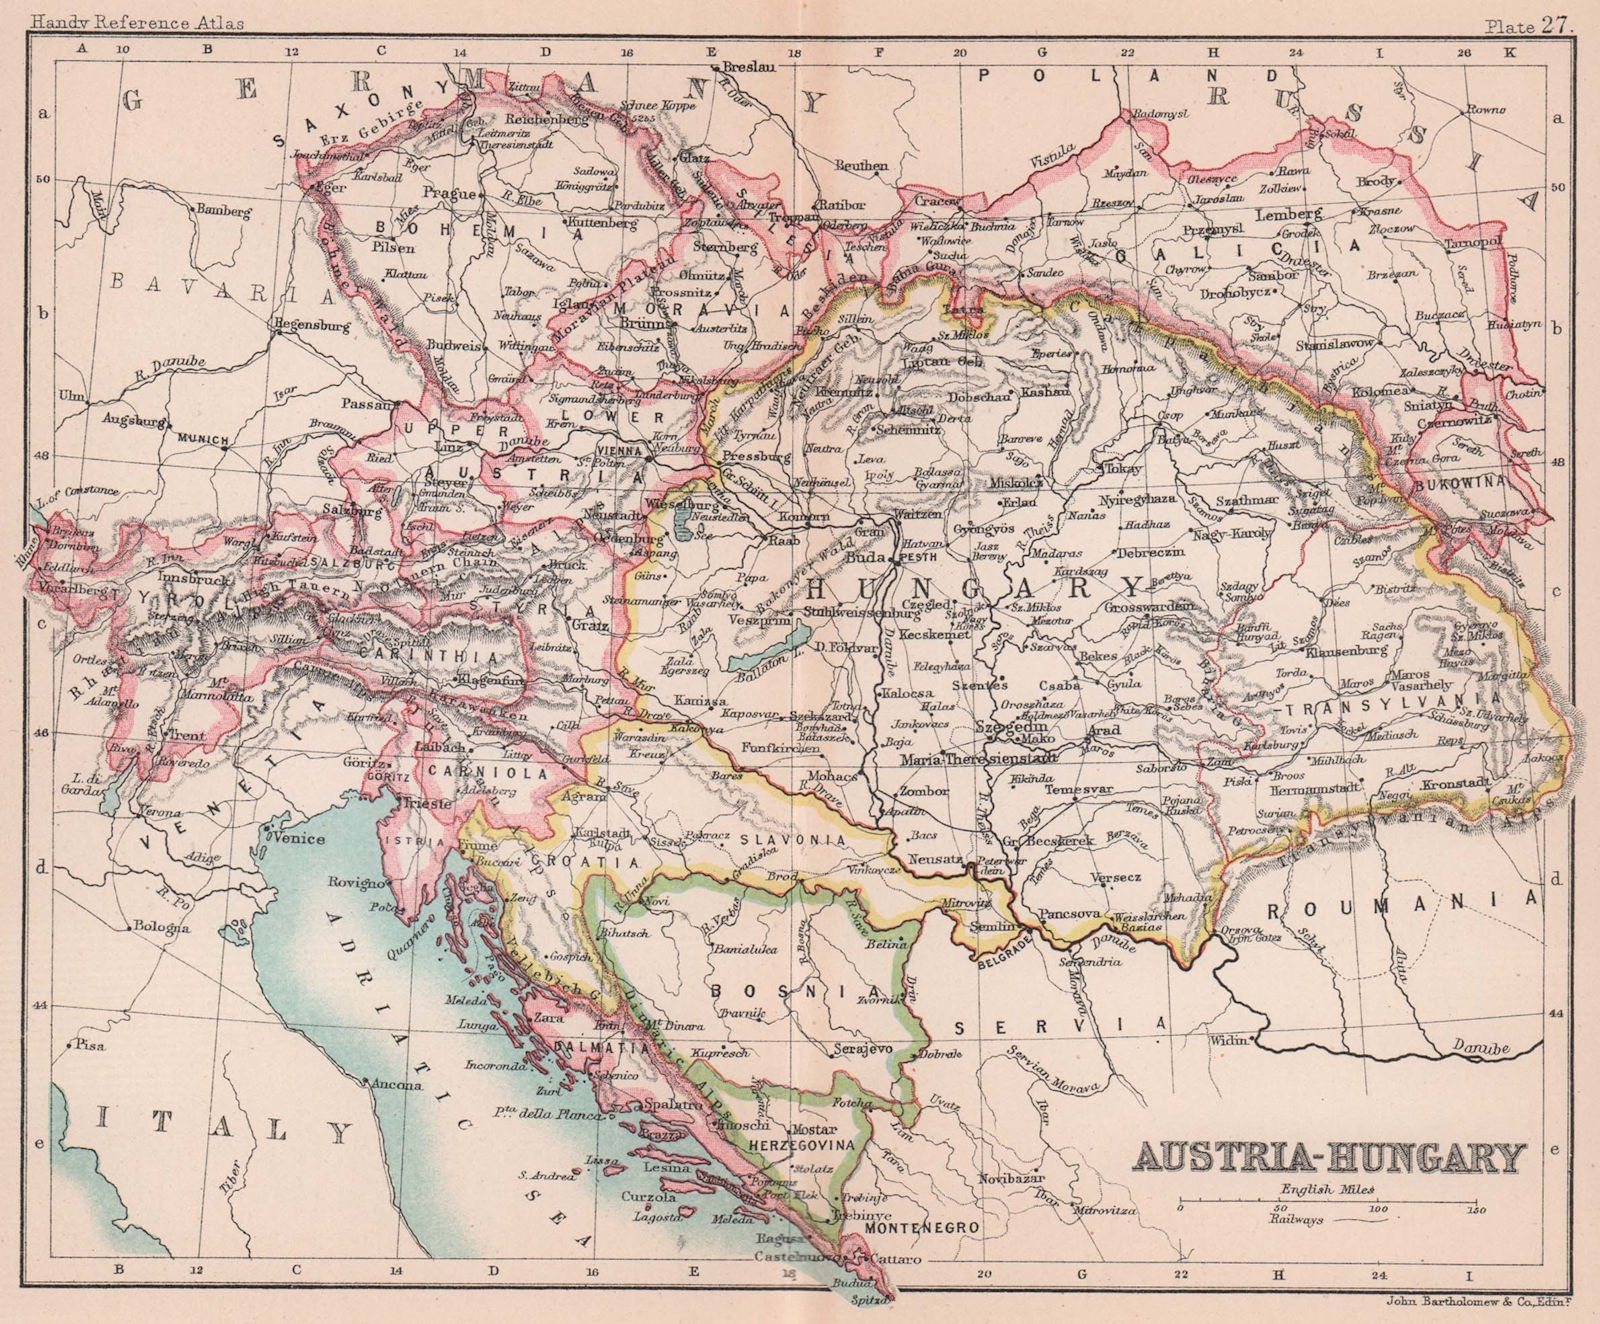 Austria-Hungary. Dalmatia Galicia Bohemia. BARTHOLOMEW 1893 old antique map